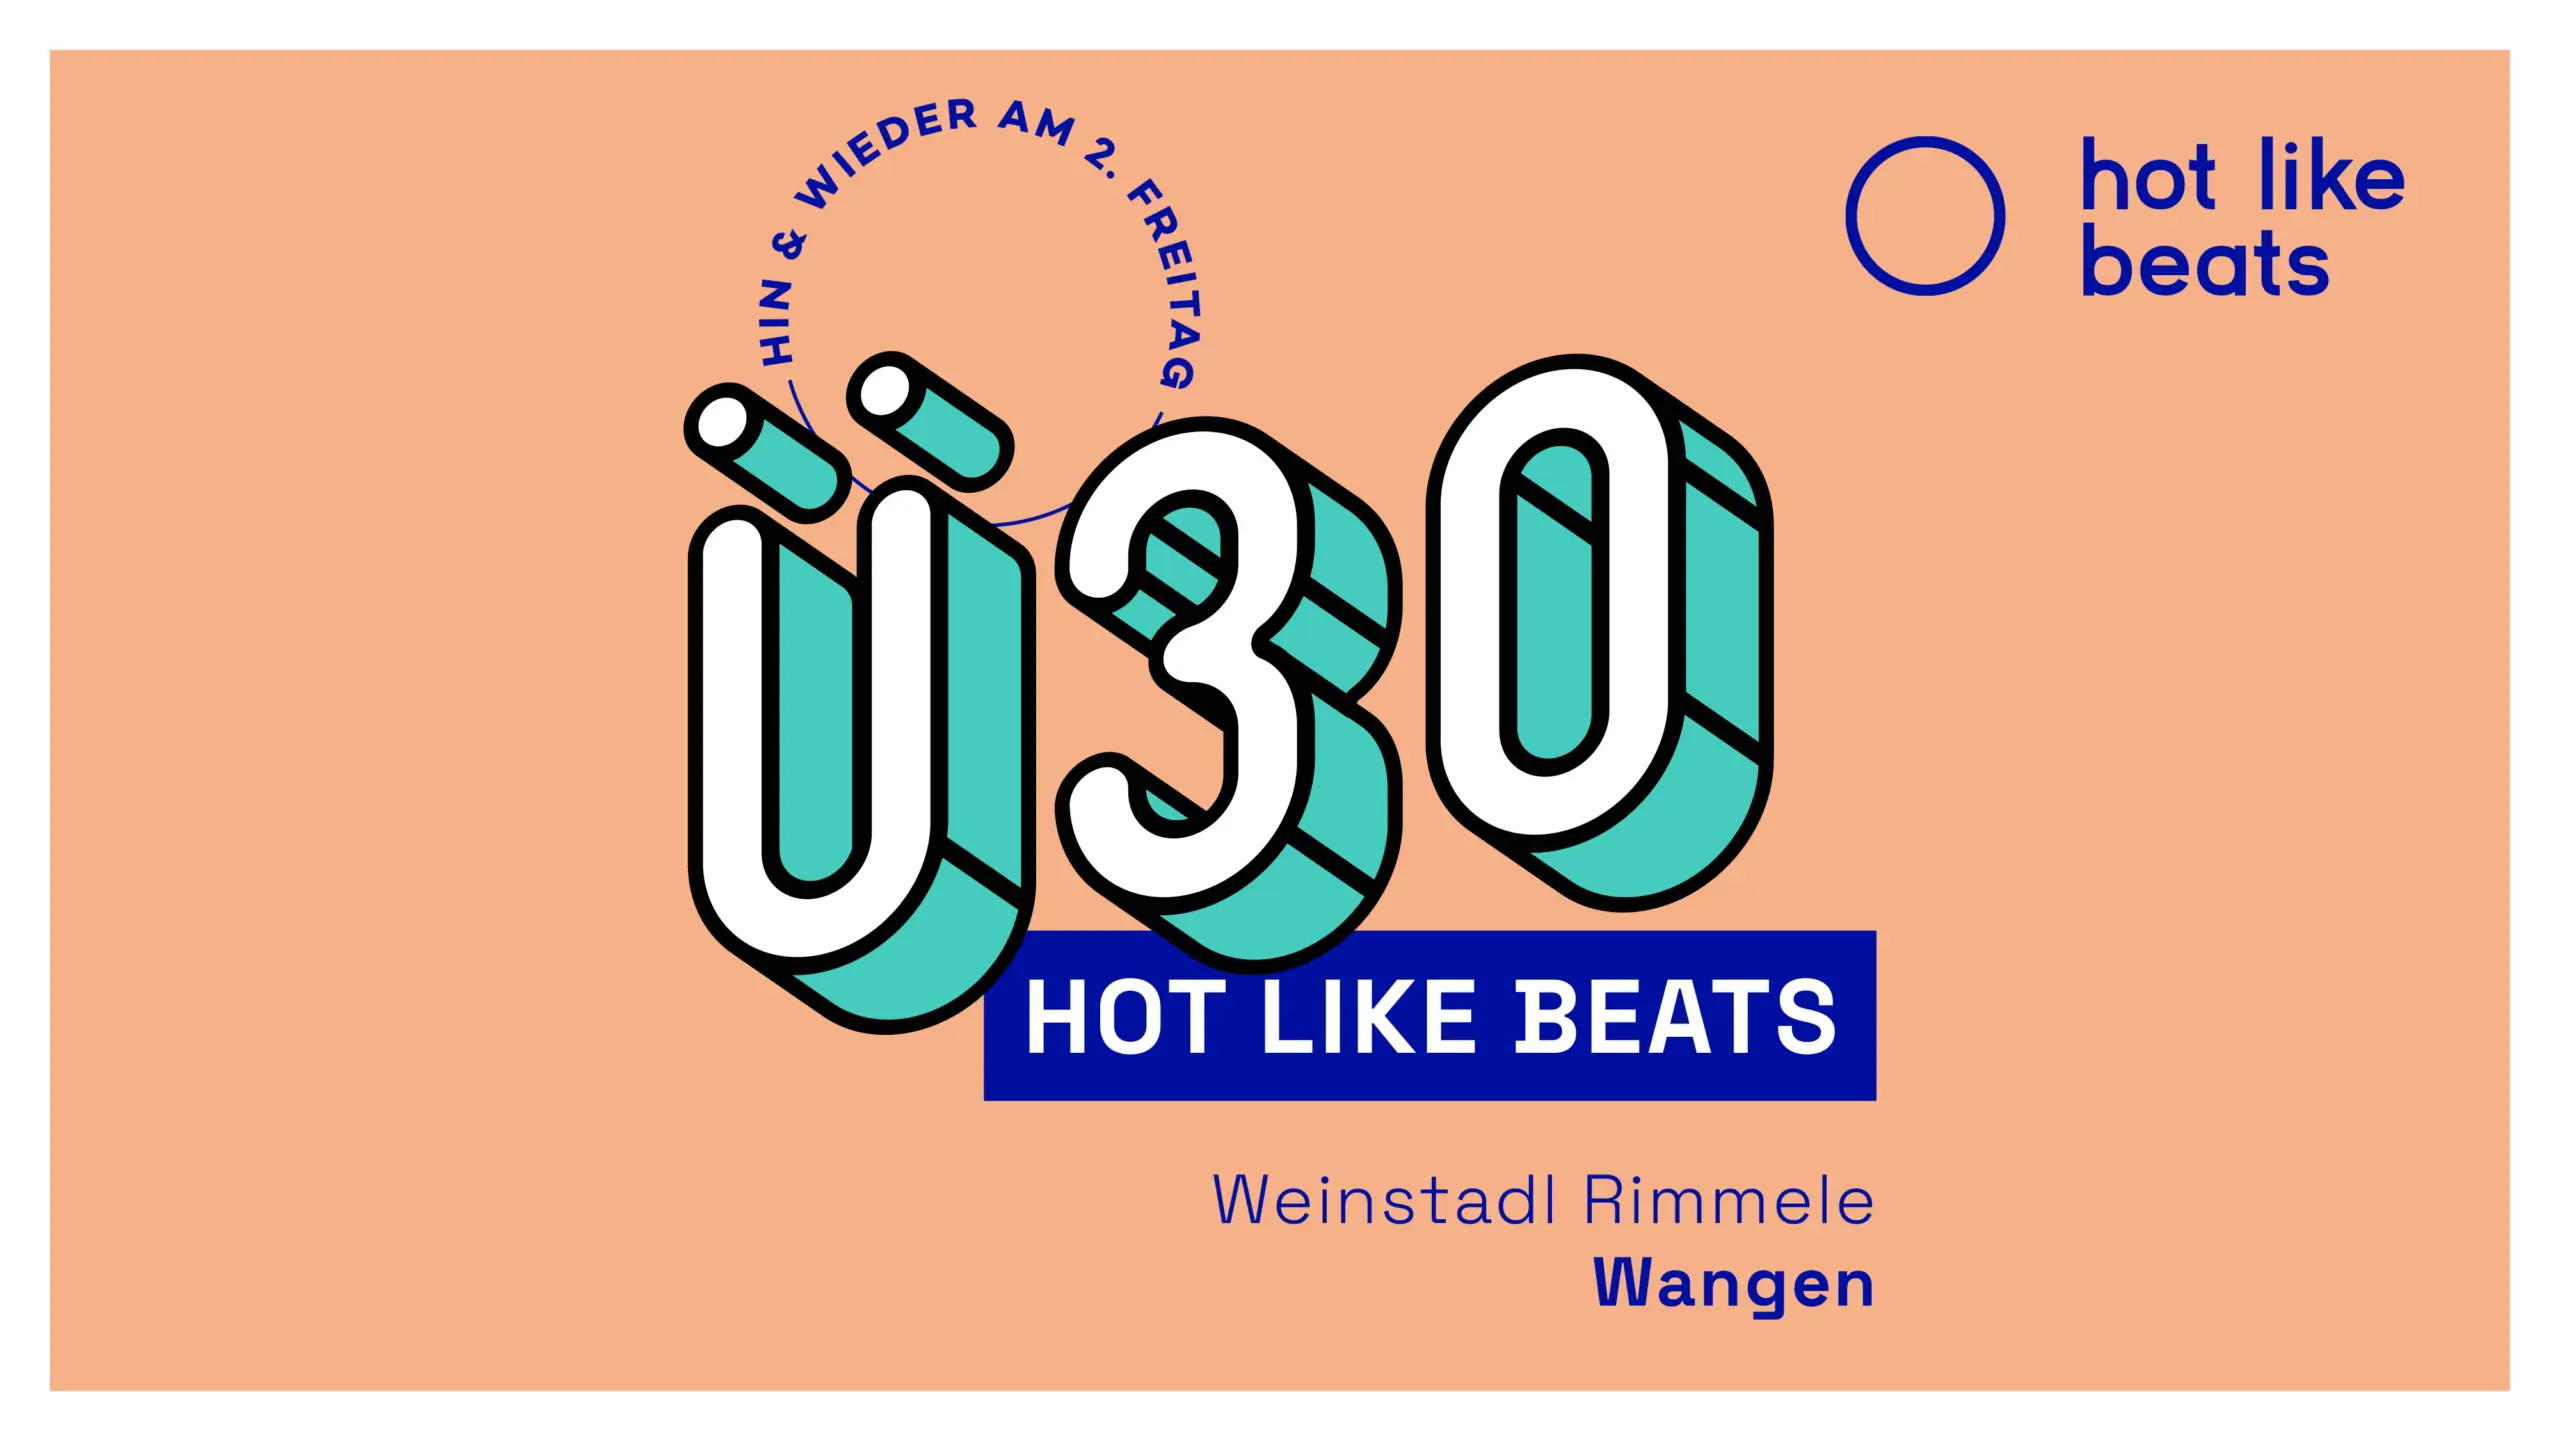 Ü30 – Hot Like Beats